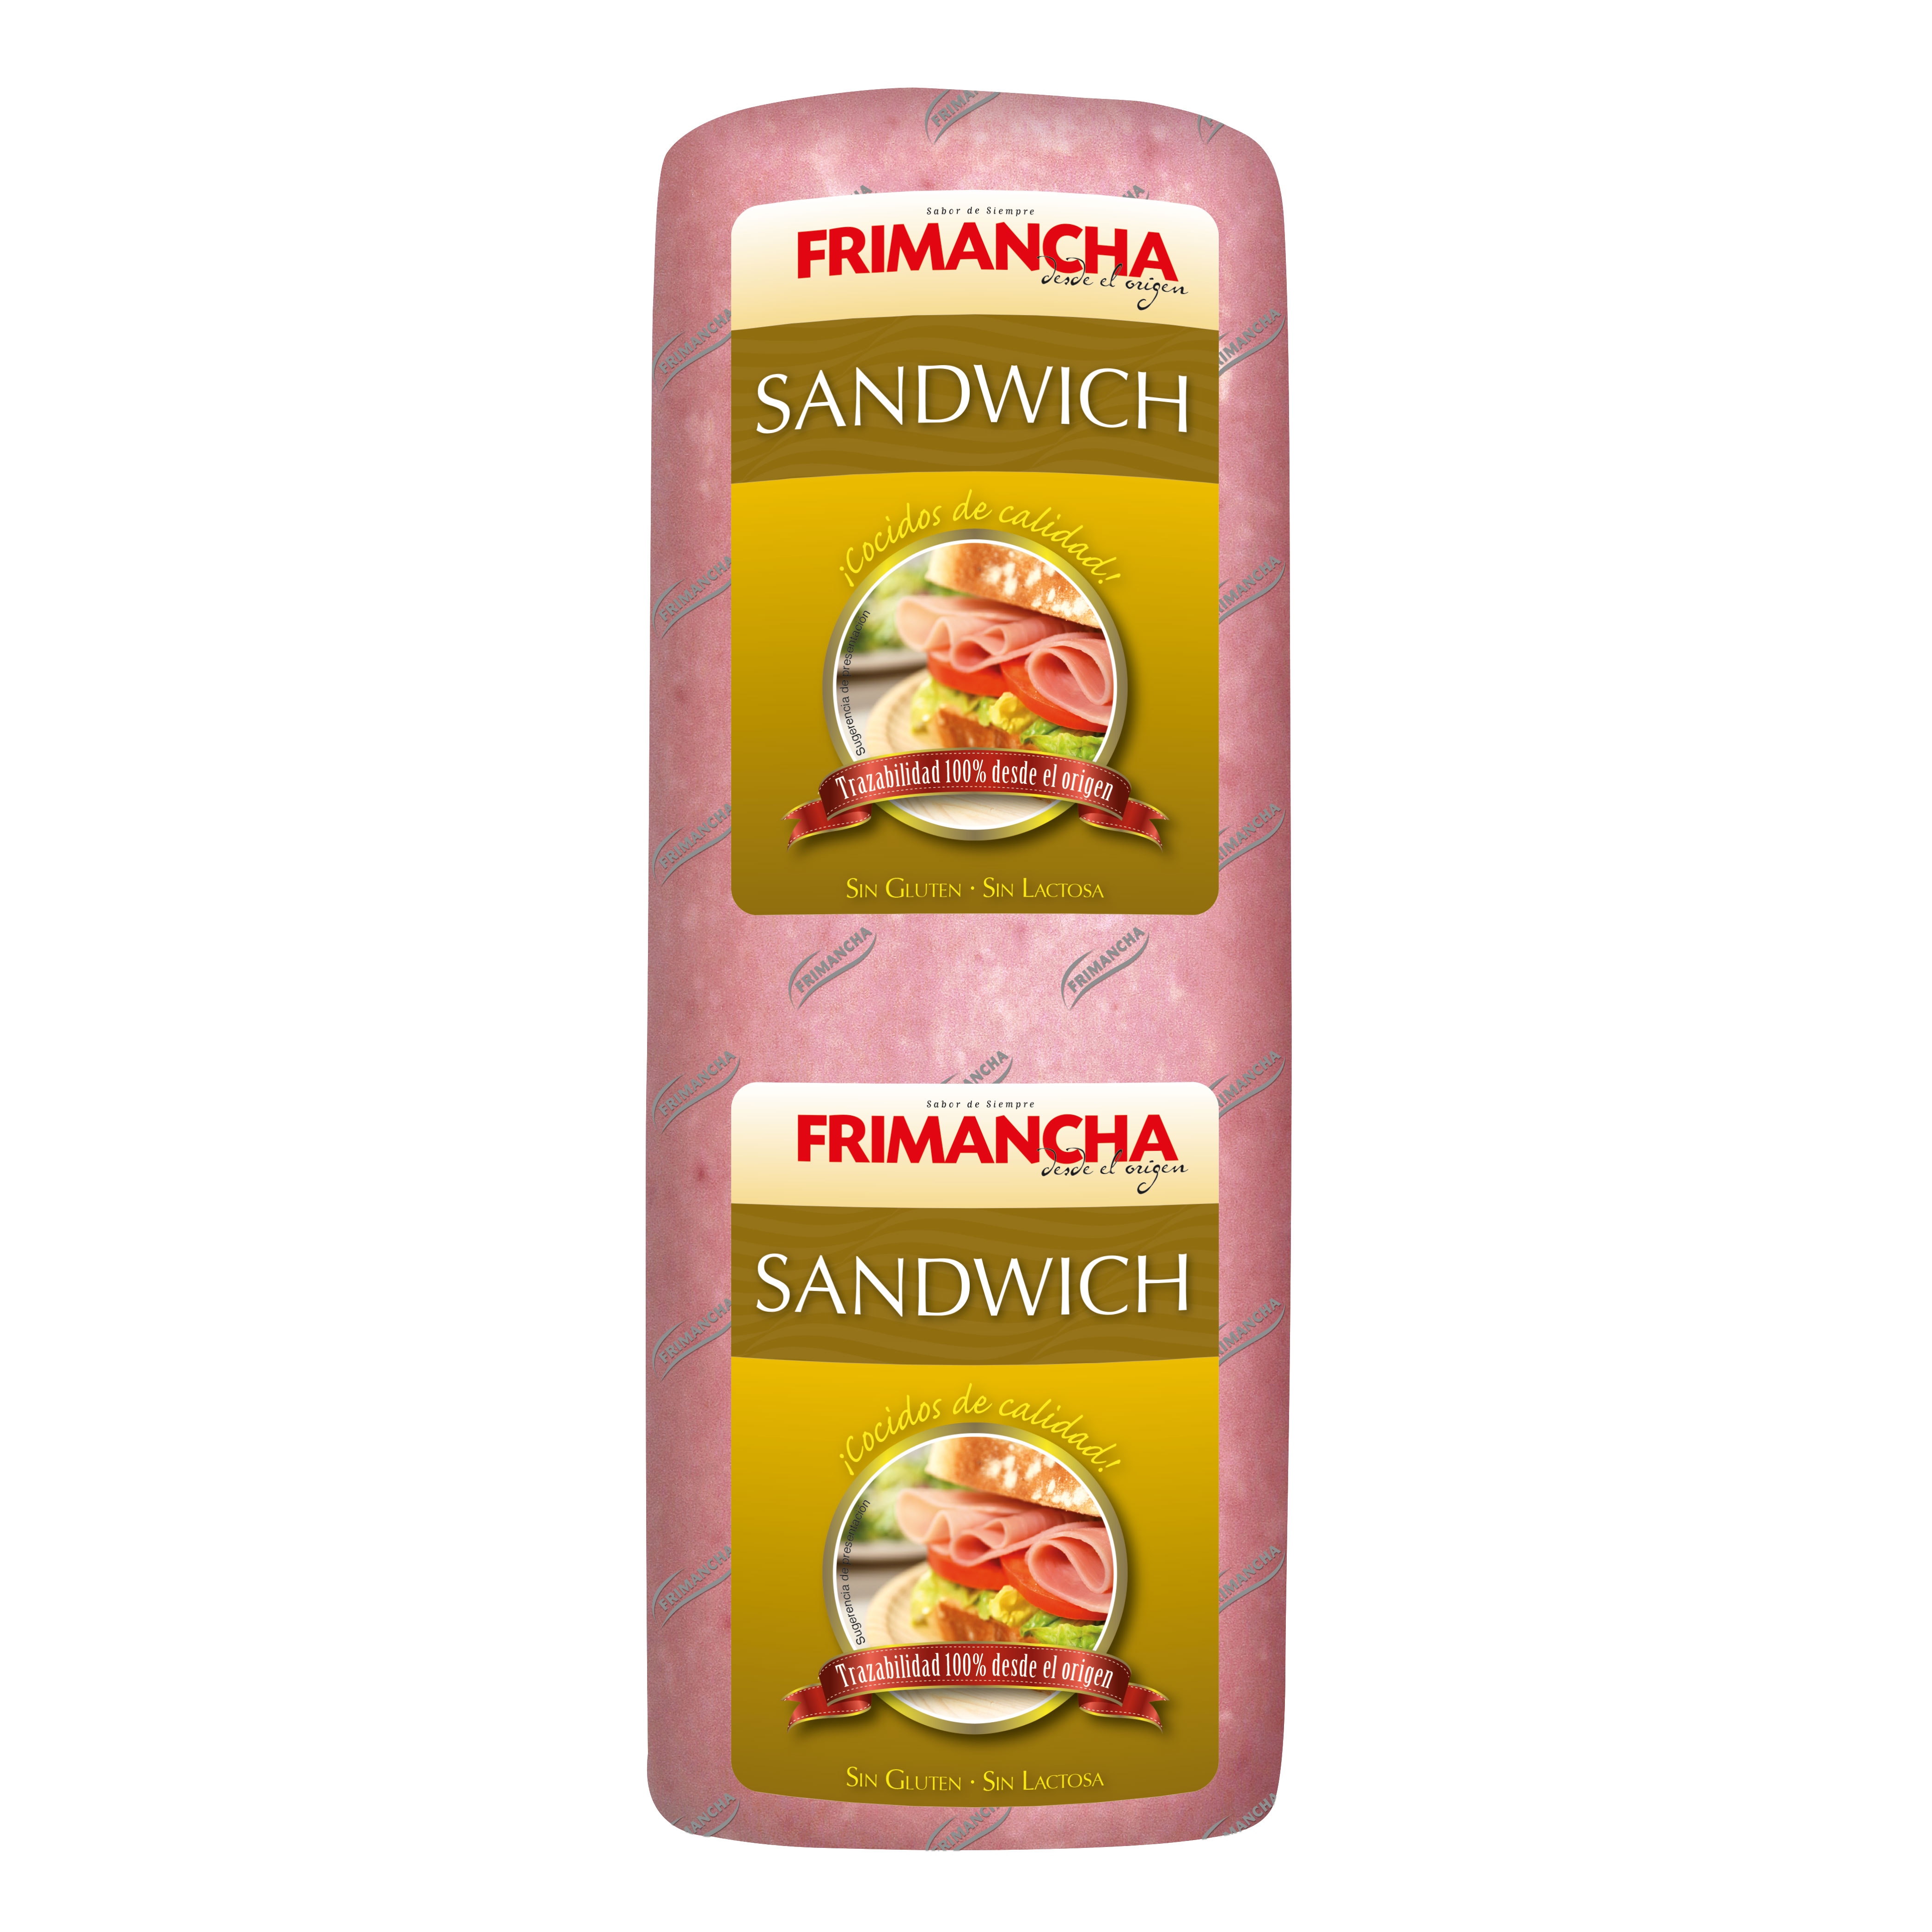 Charcuterie type sandwich